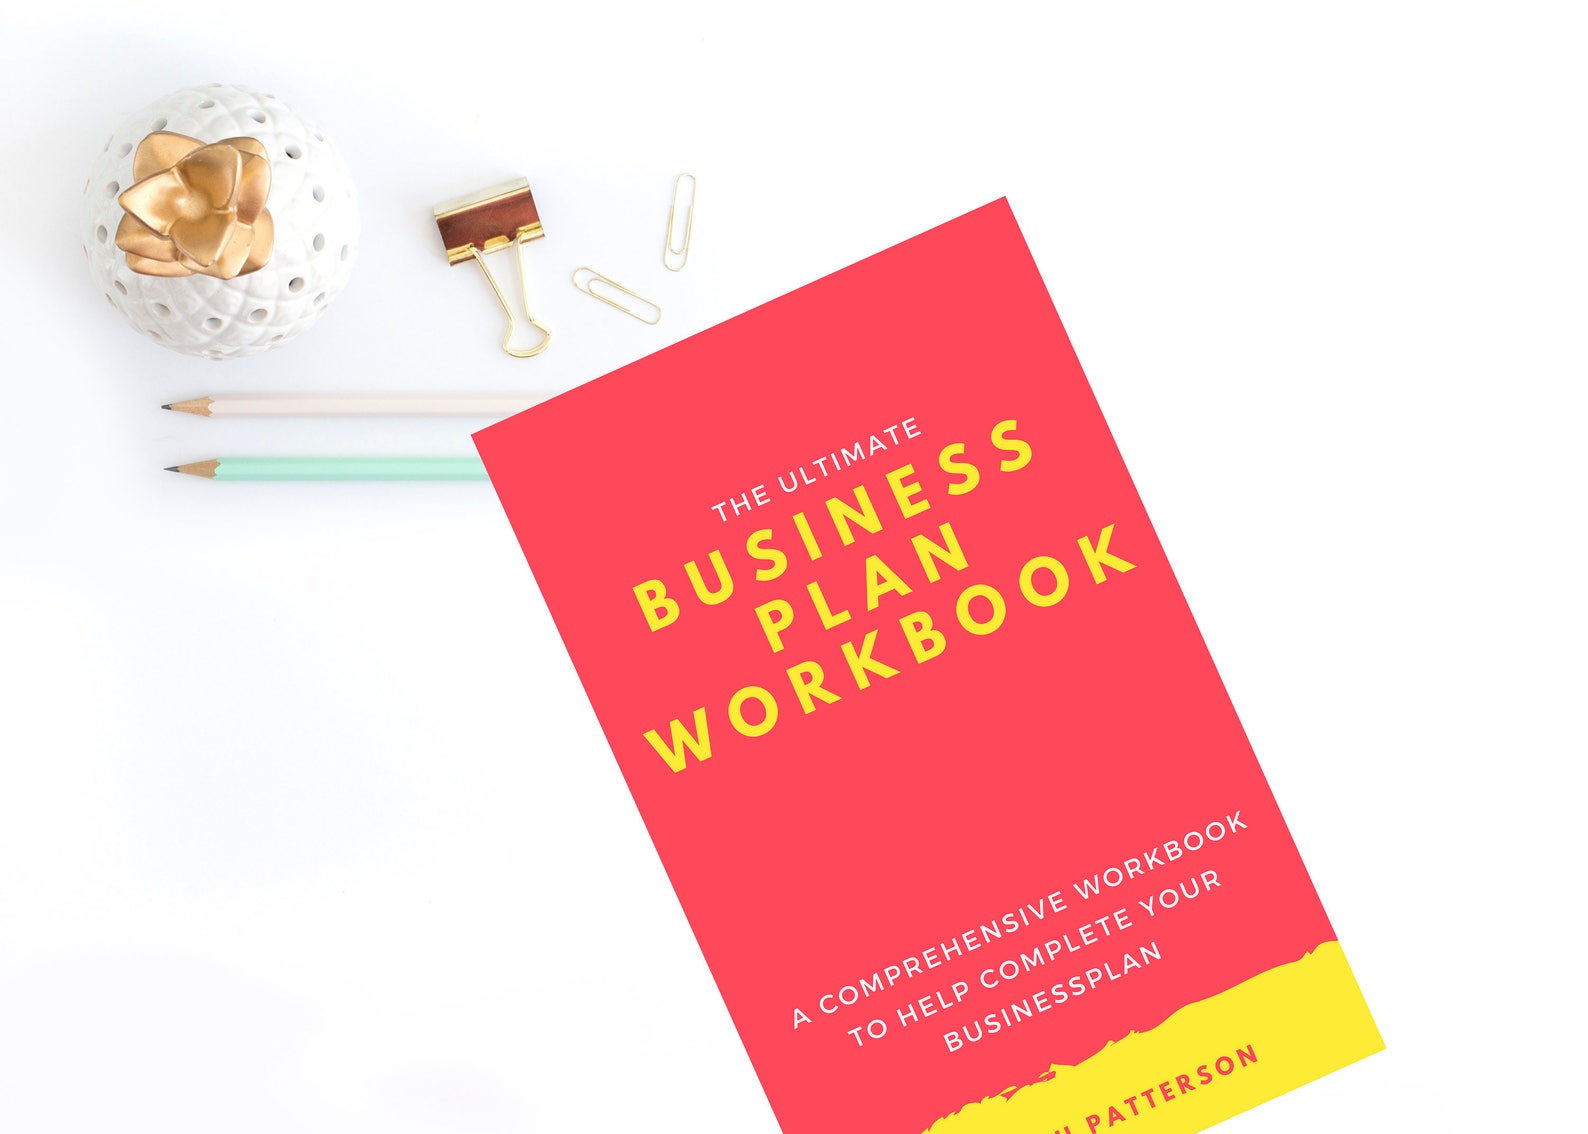 best business plan workbook